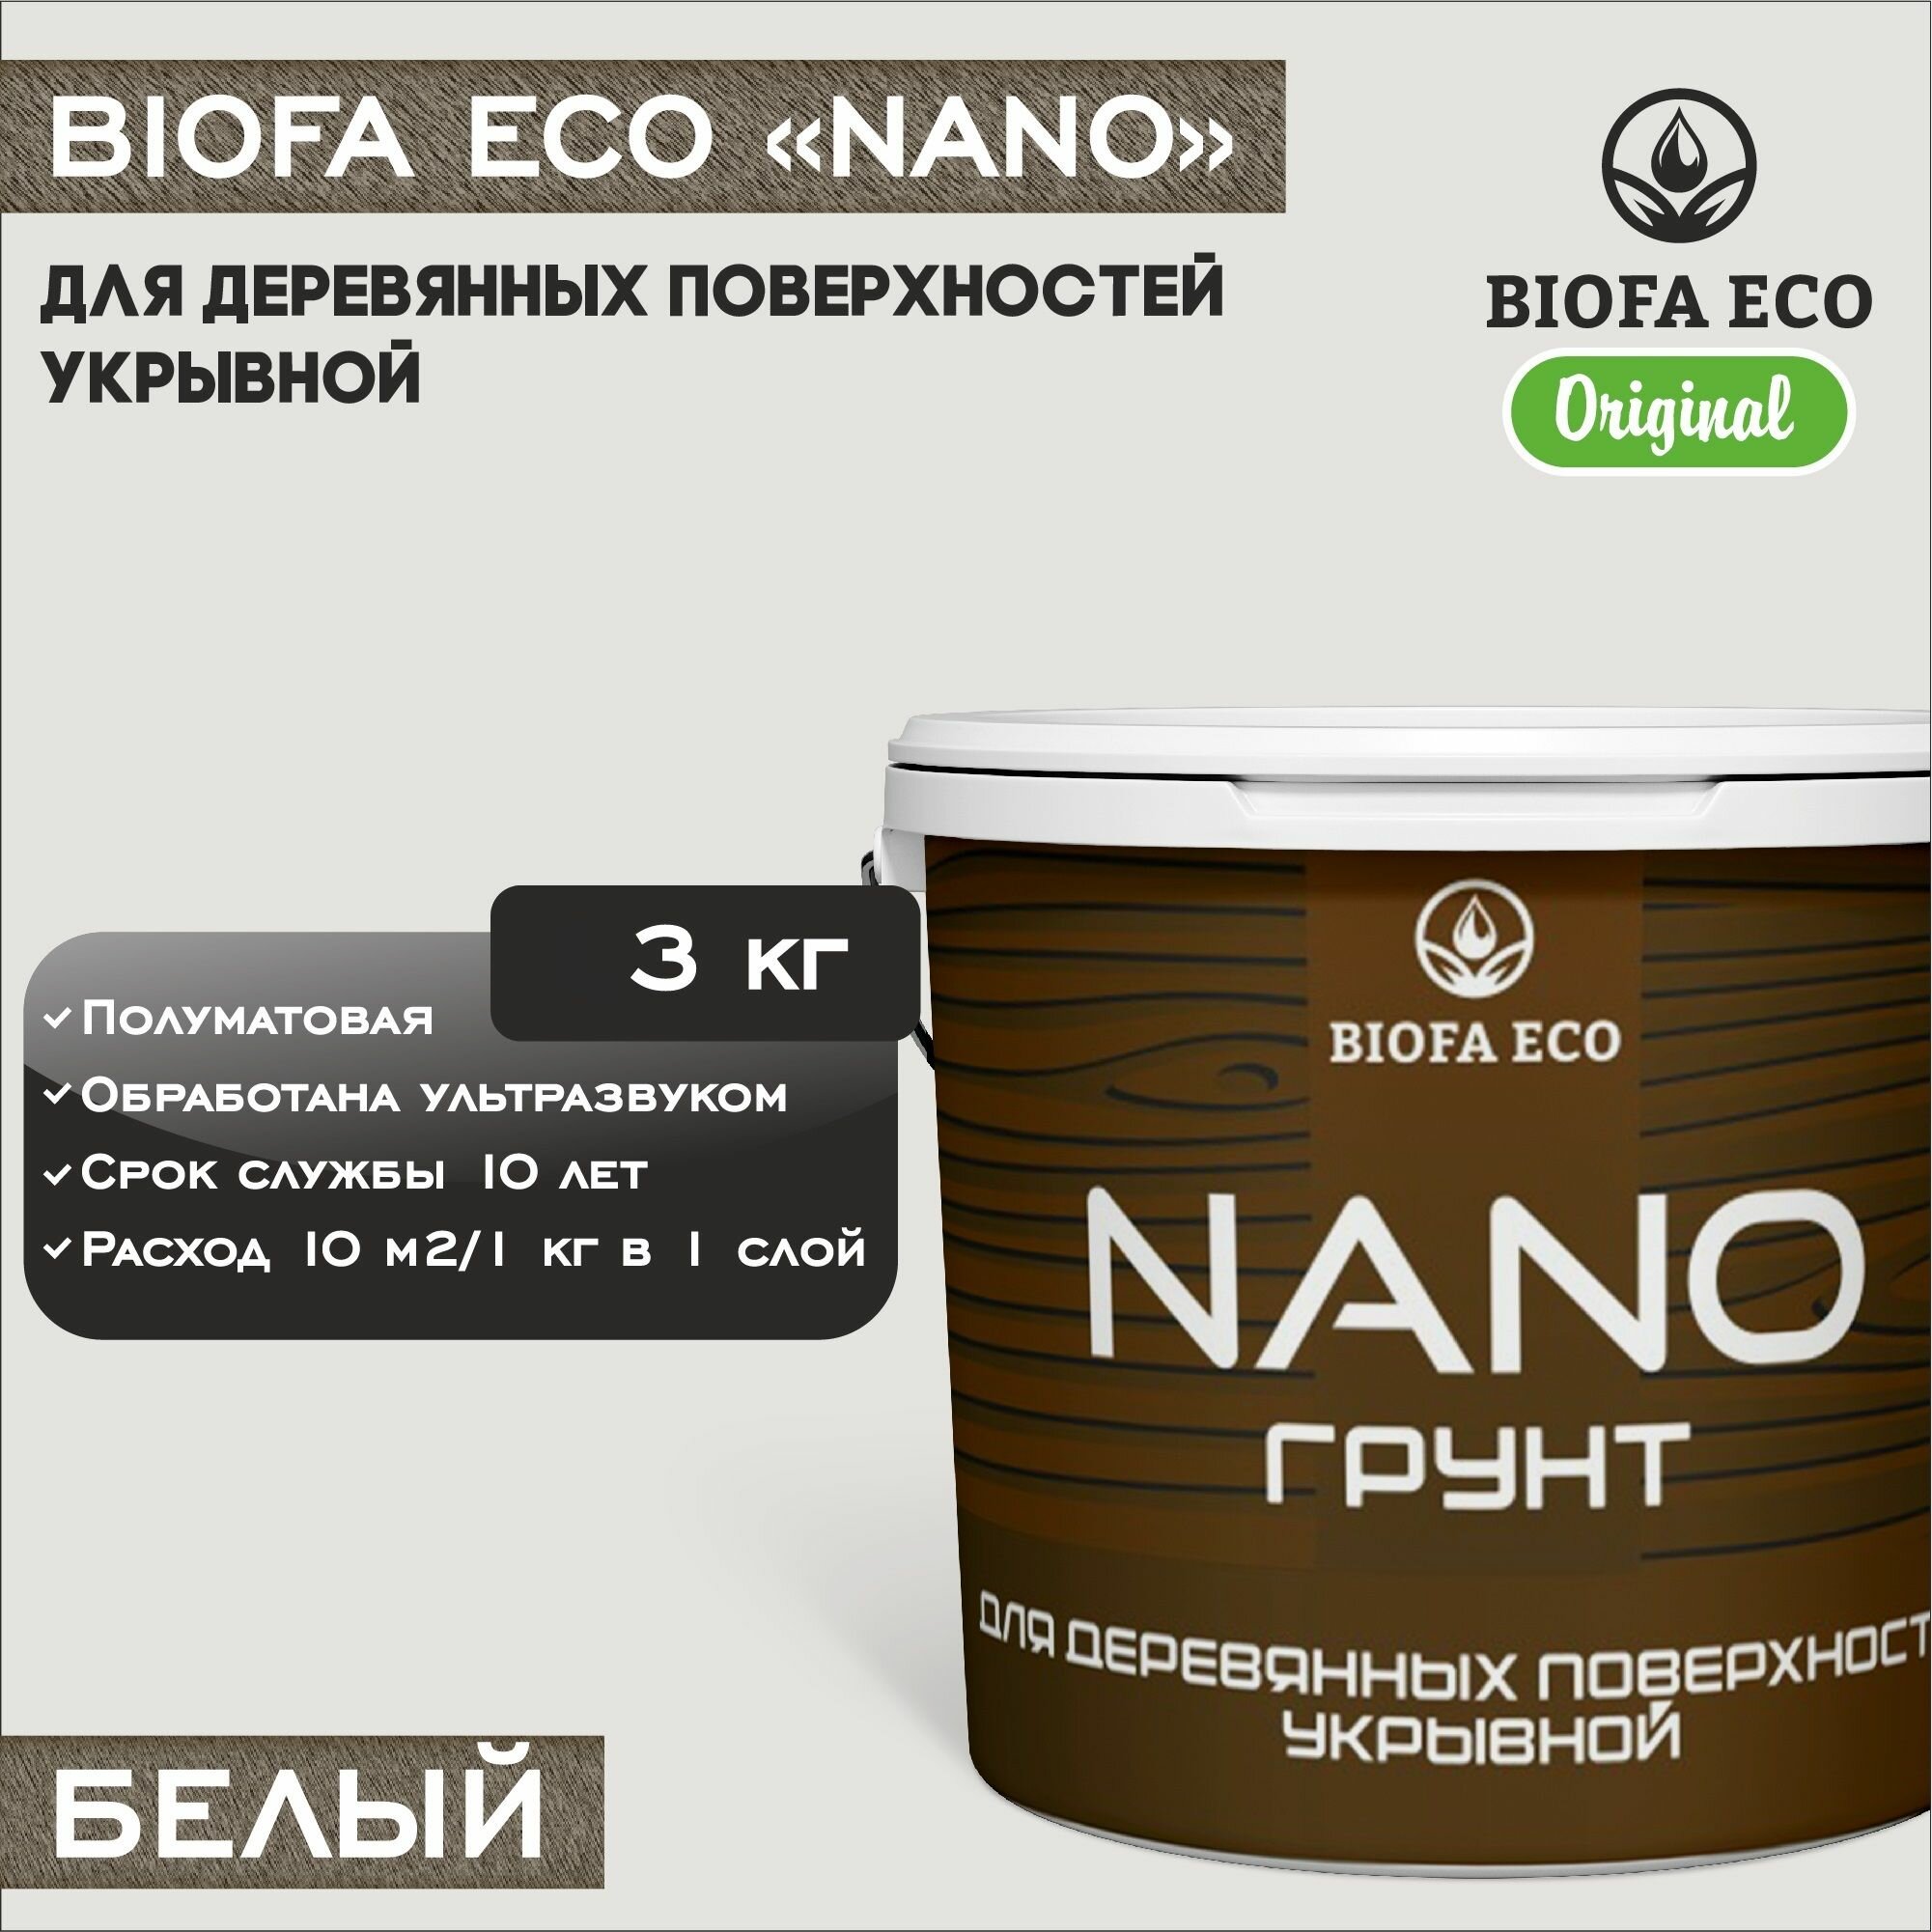 Грунт-краска BIOFA ECO NANO для деревянных поверхностей, укрывной, цвет белый, 3 кг